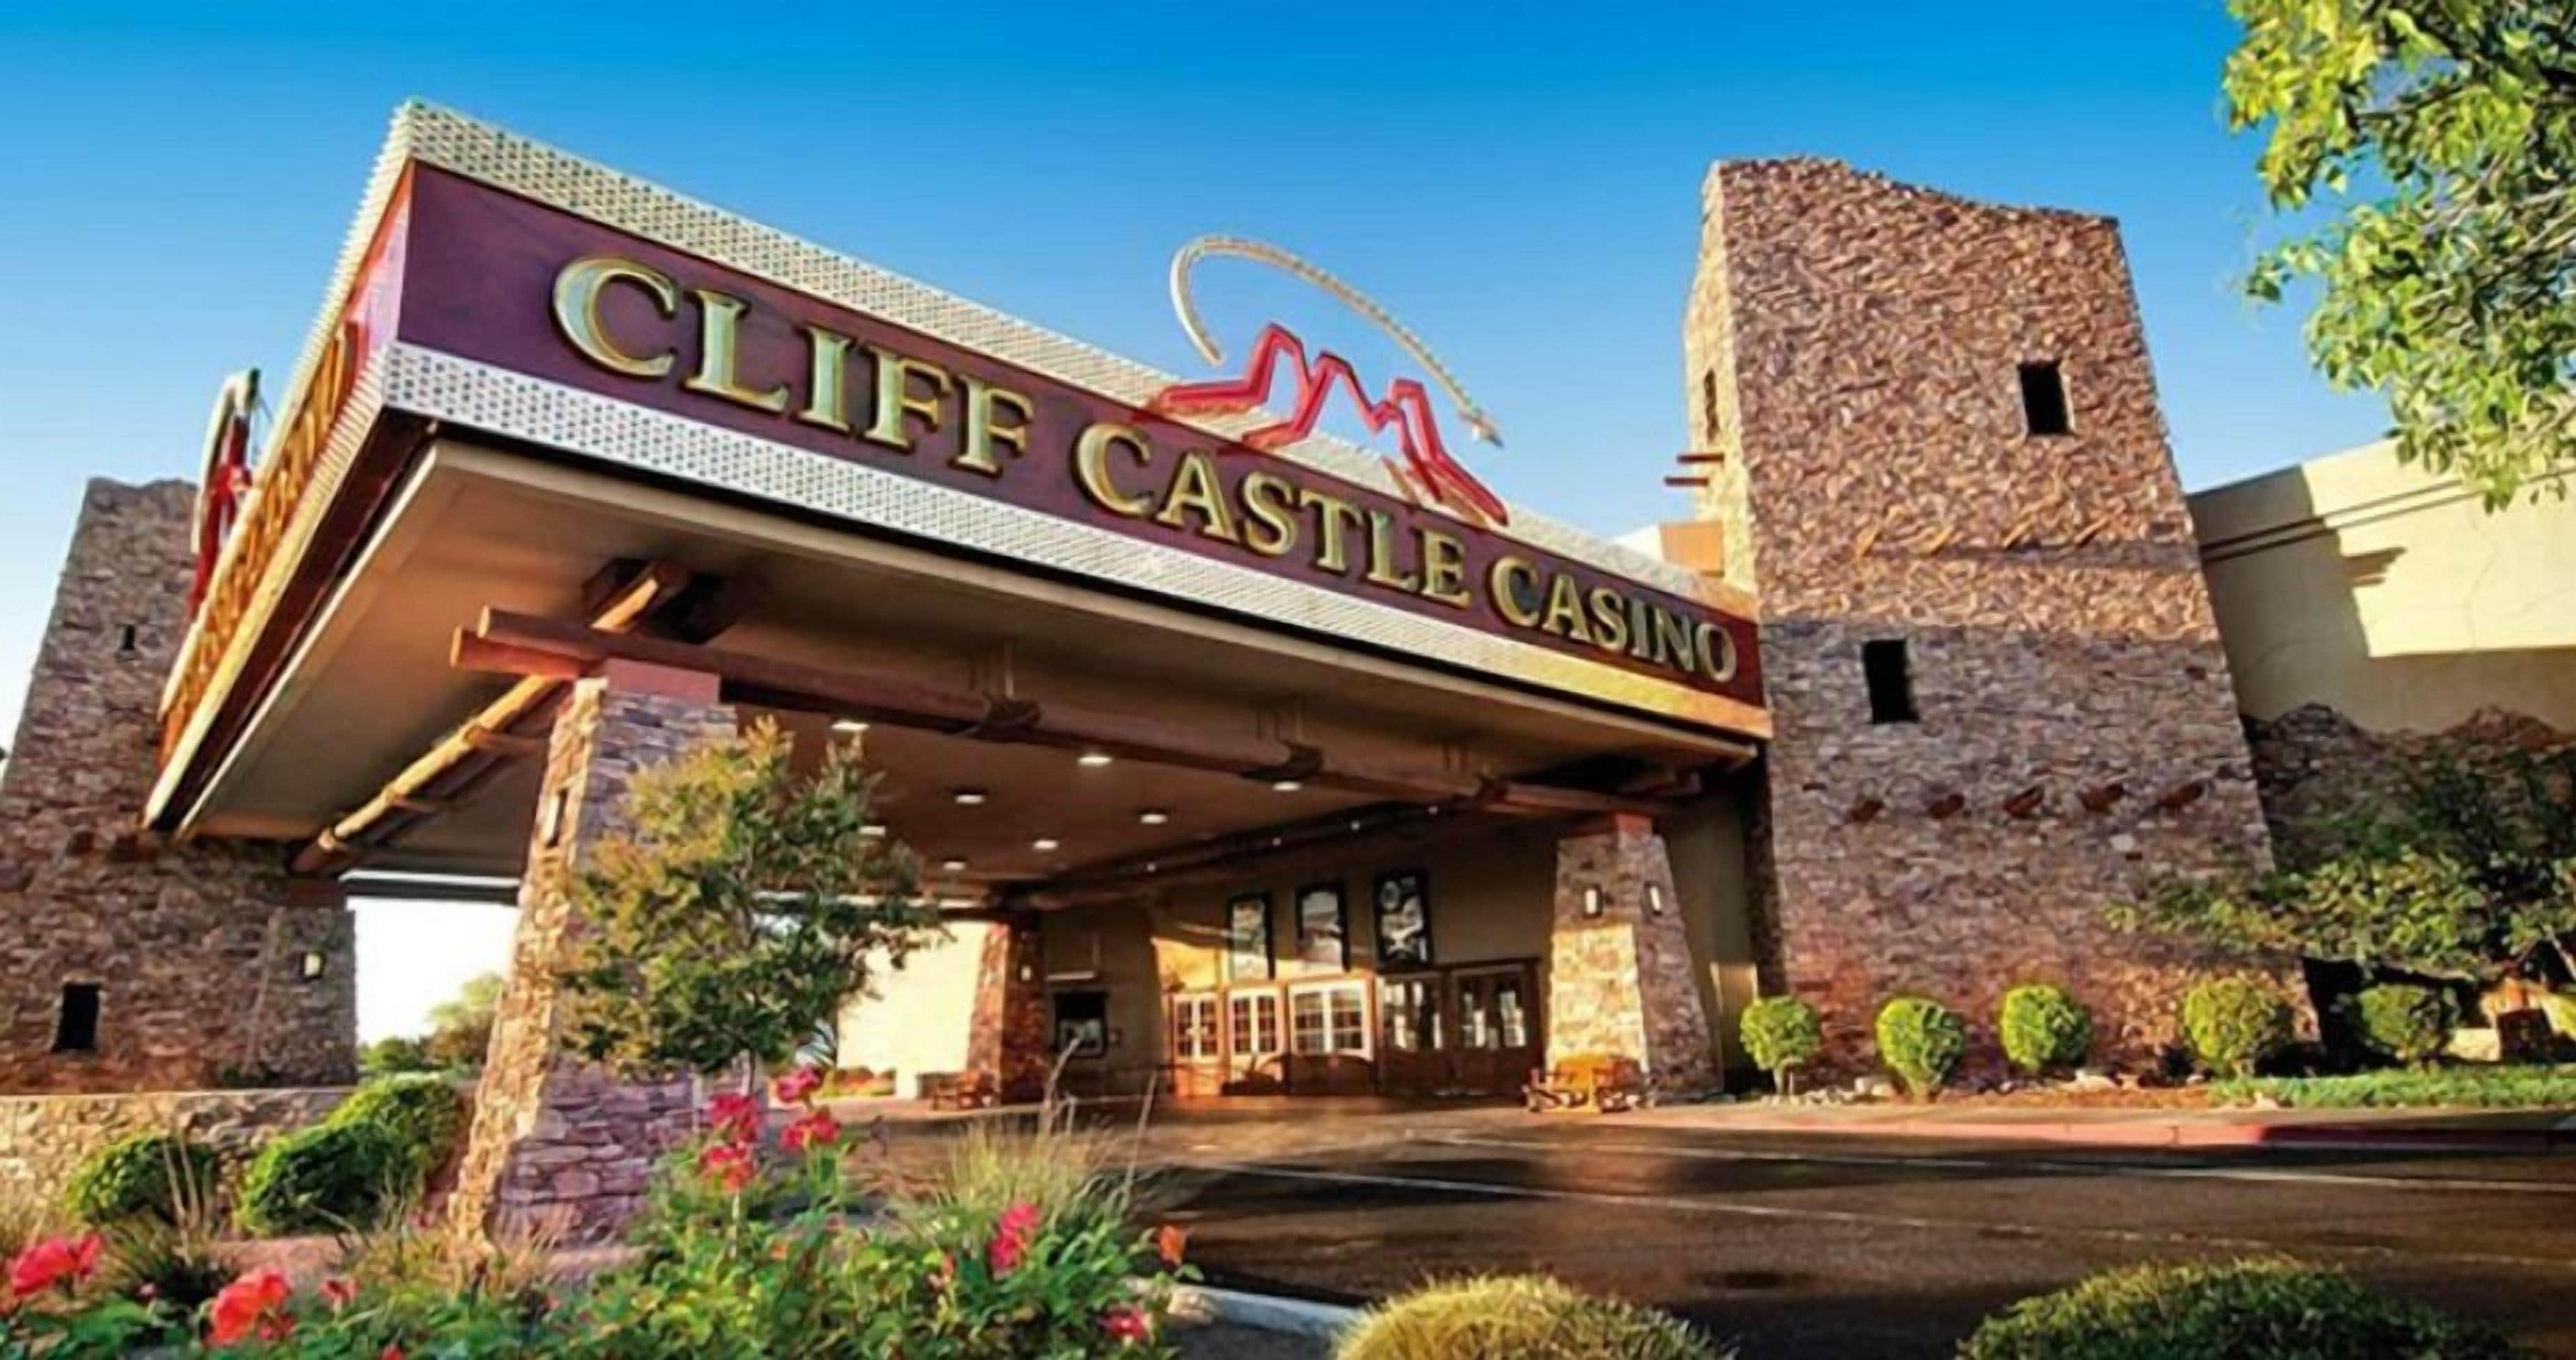 Cliff Castle Casino-Hotel